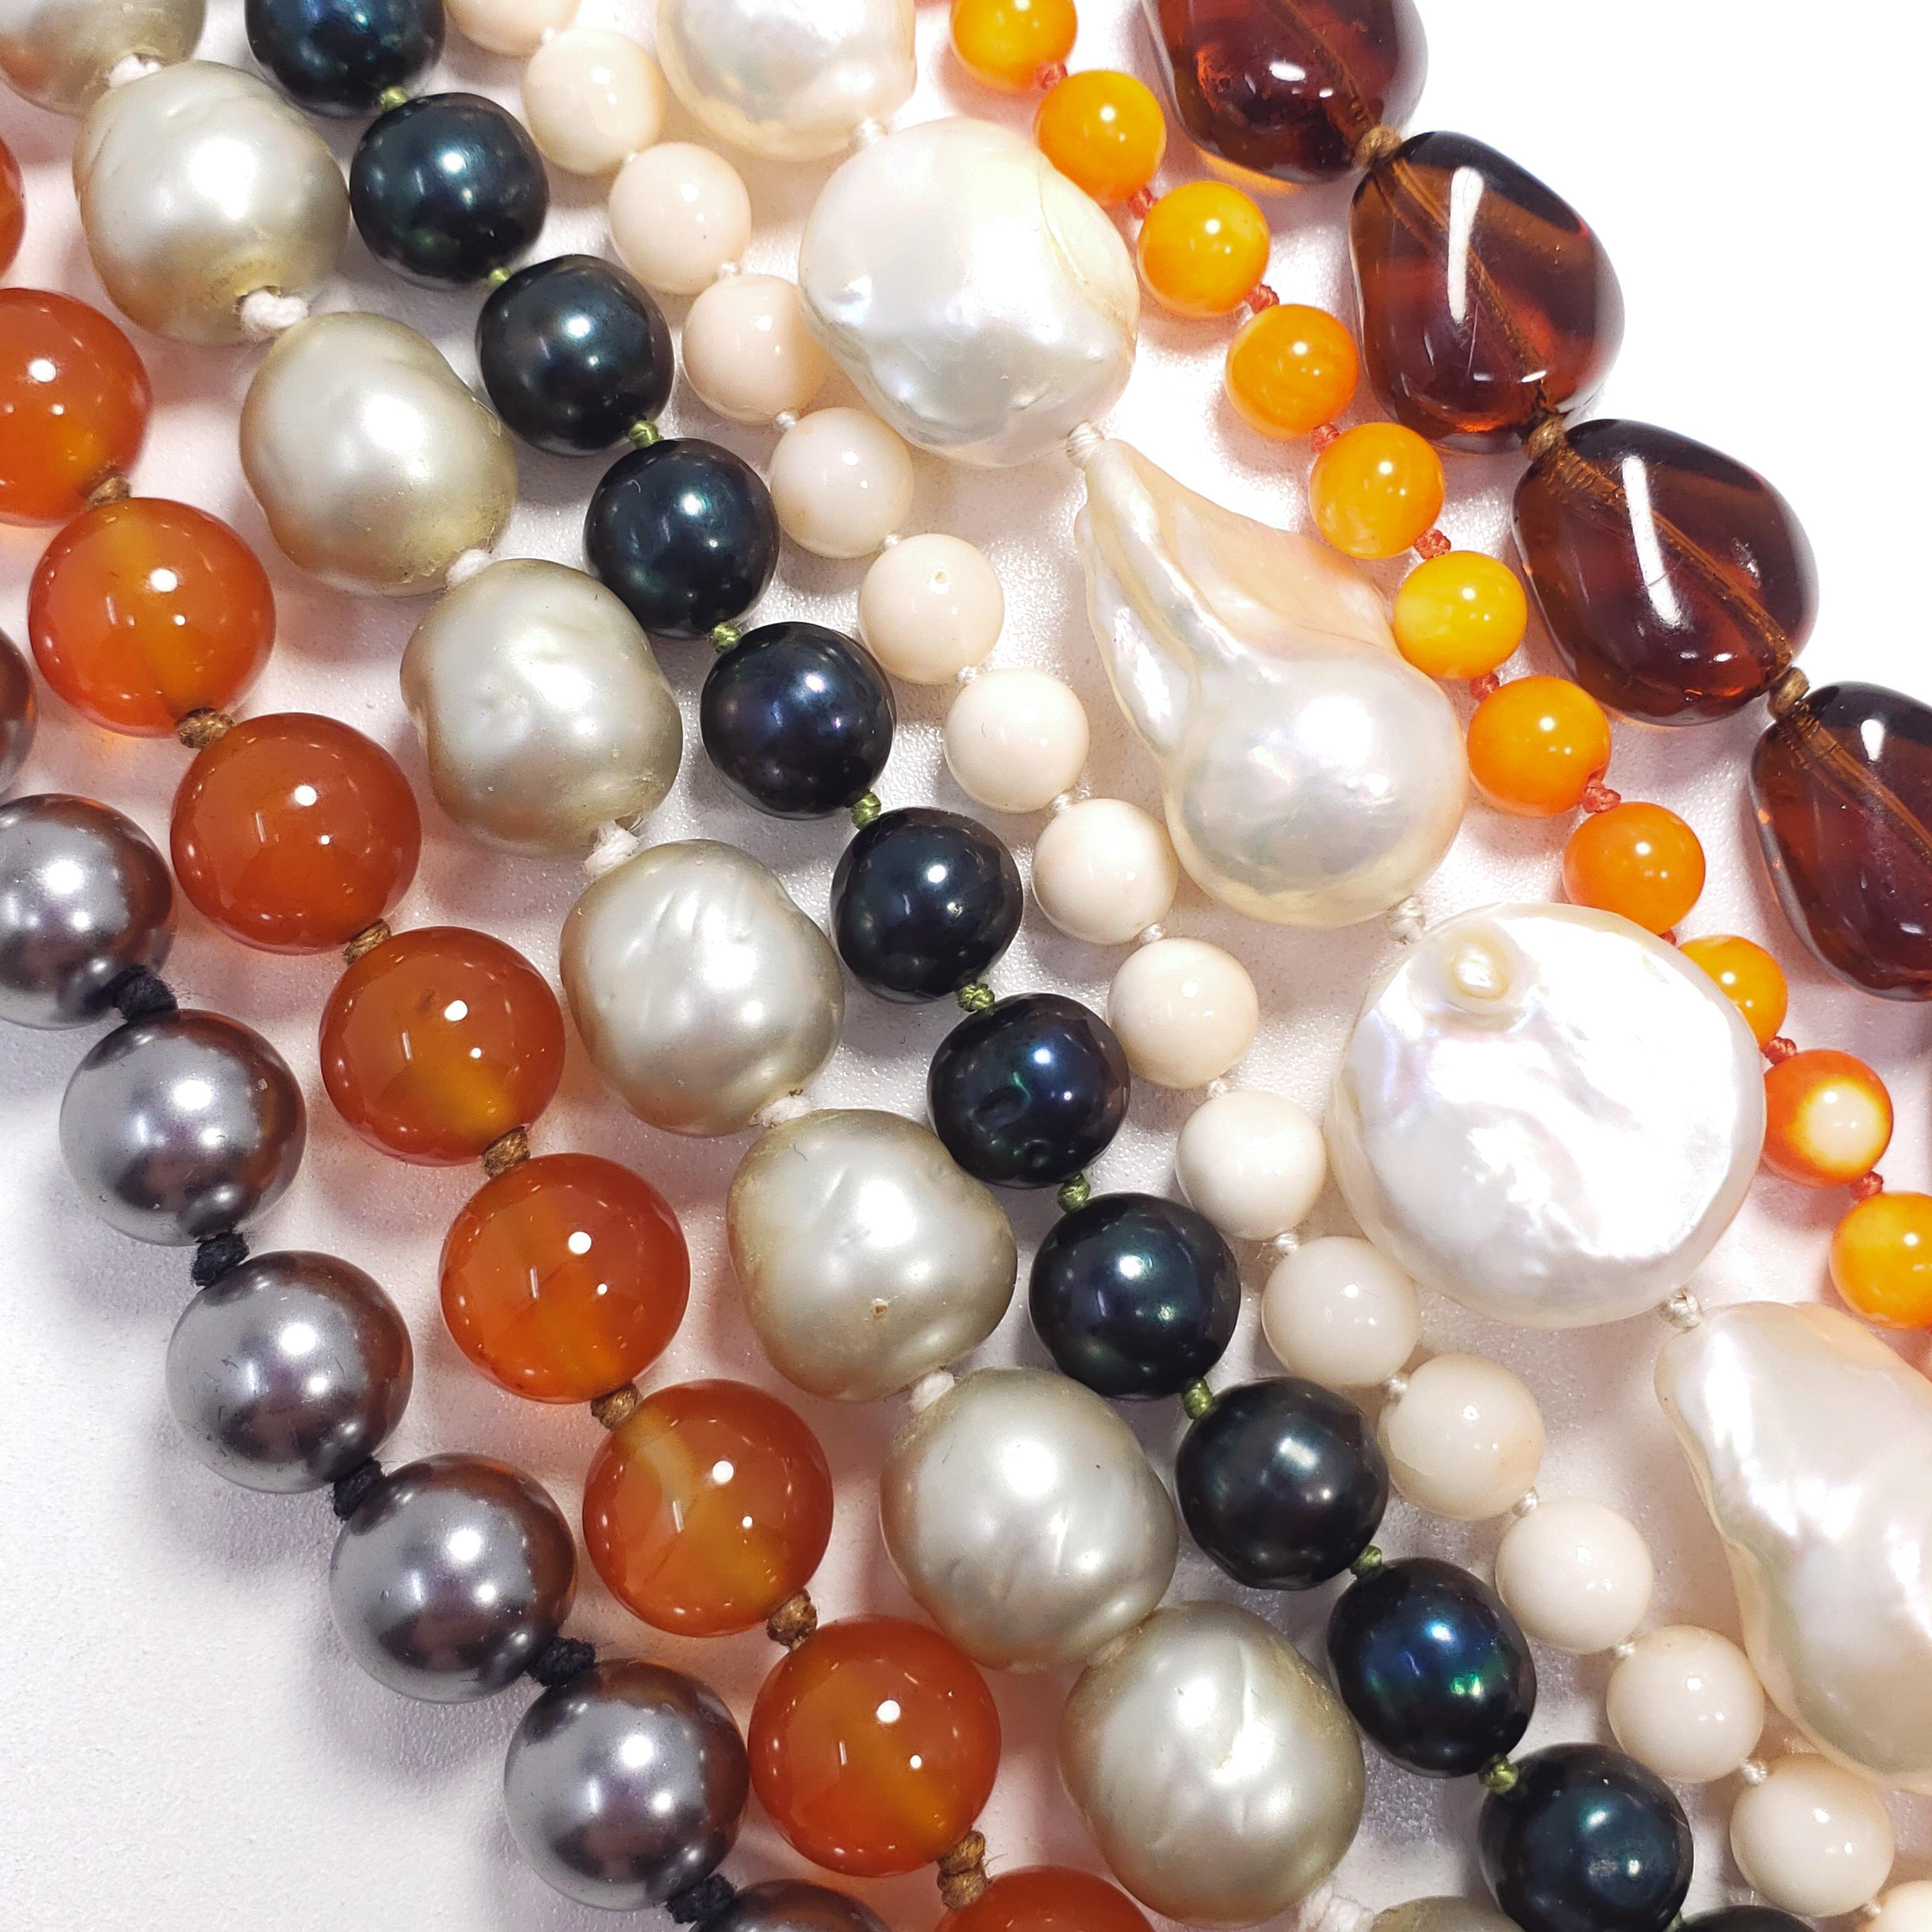 Eine mehrsträngige Perlenkette mit geknoteten Schnüren. Mit einer Auswahl an echten und unechten Perlen, die sich zu einem raffinierten, gedrehten Kunstwerk vereinen! Mit einem Kastenverschluss aus Kunstperlen in einer vergoldeten Lünette,